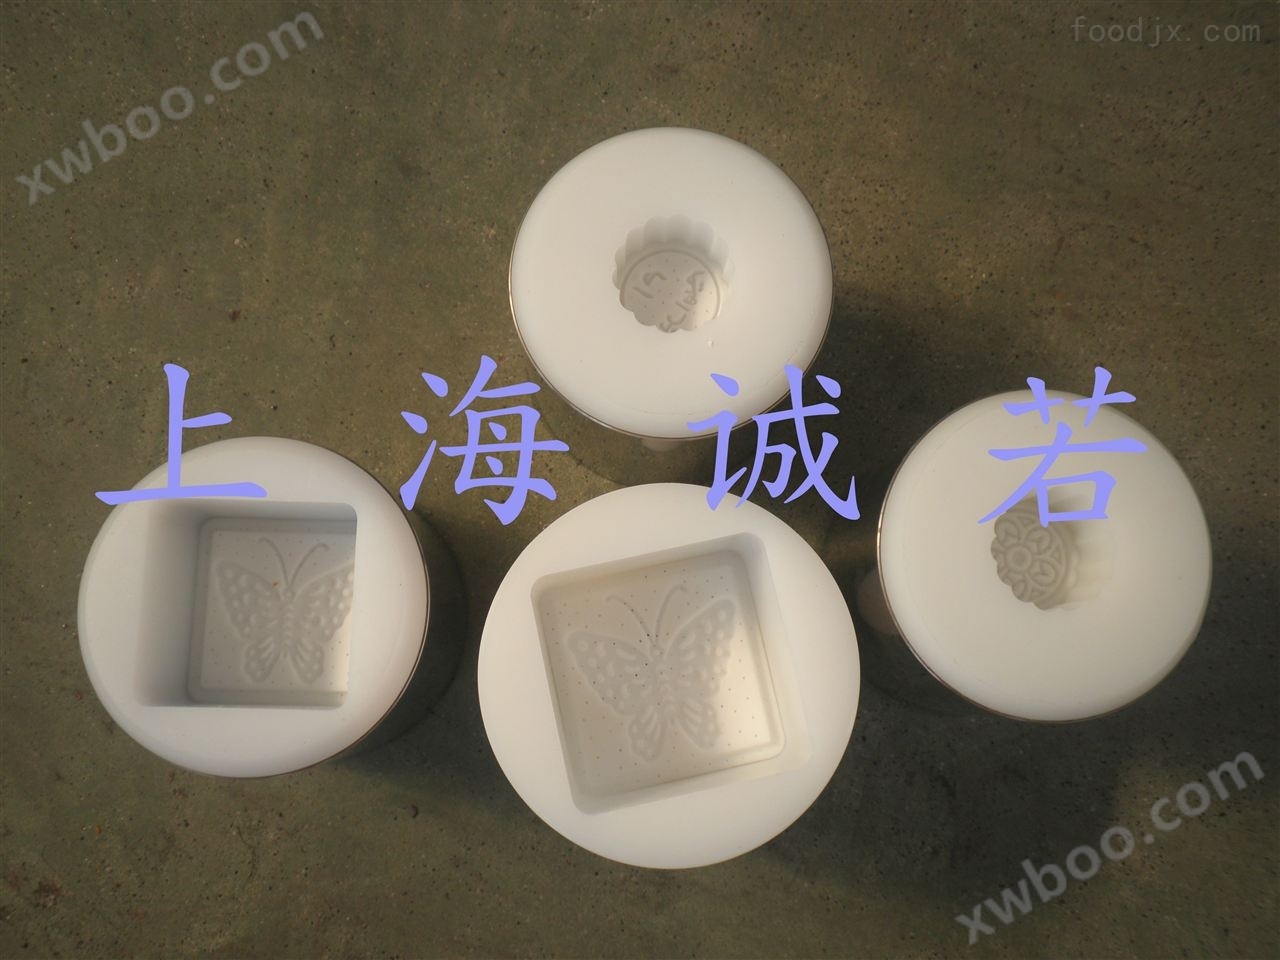 上海诚若机械有限公司供应月饼机设备 月饼成套设备